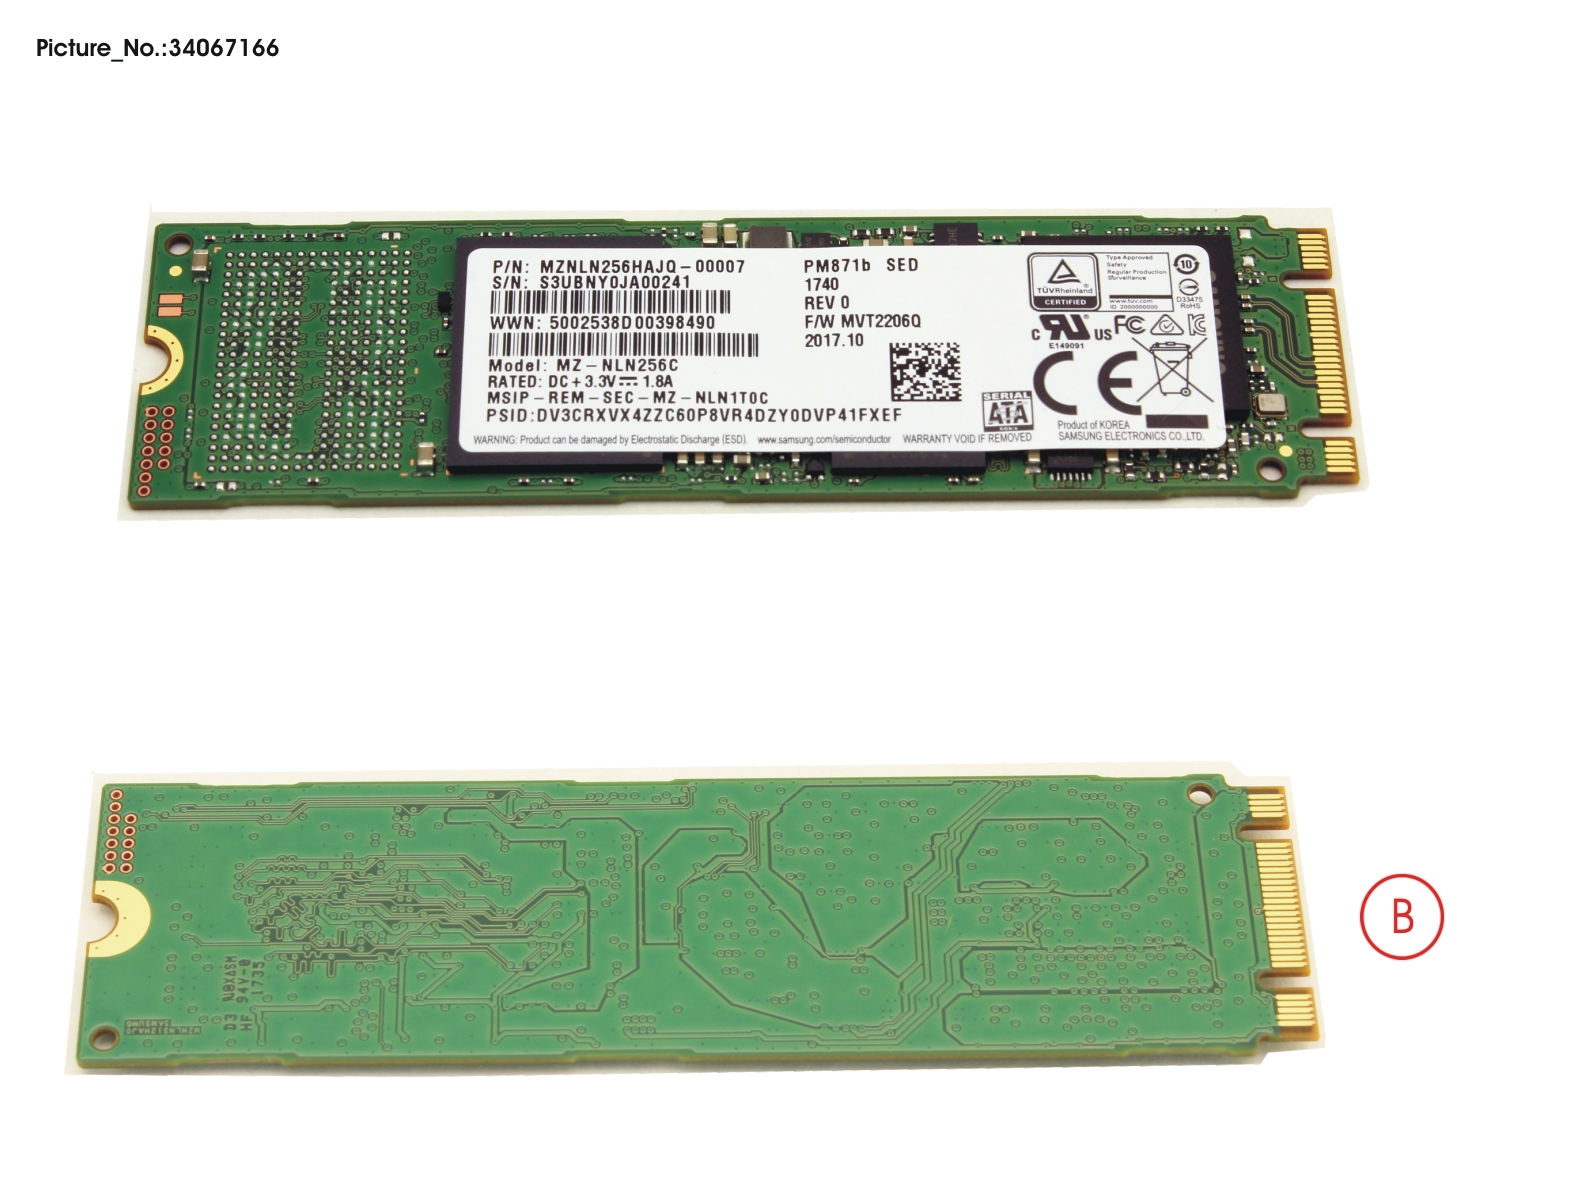 SSD S3 M.2 2280 PM871B 256GB(OPAL)